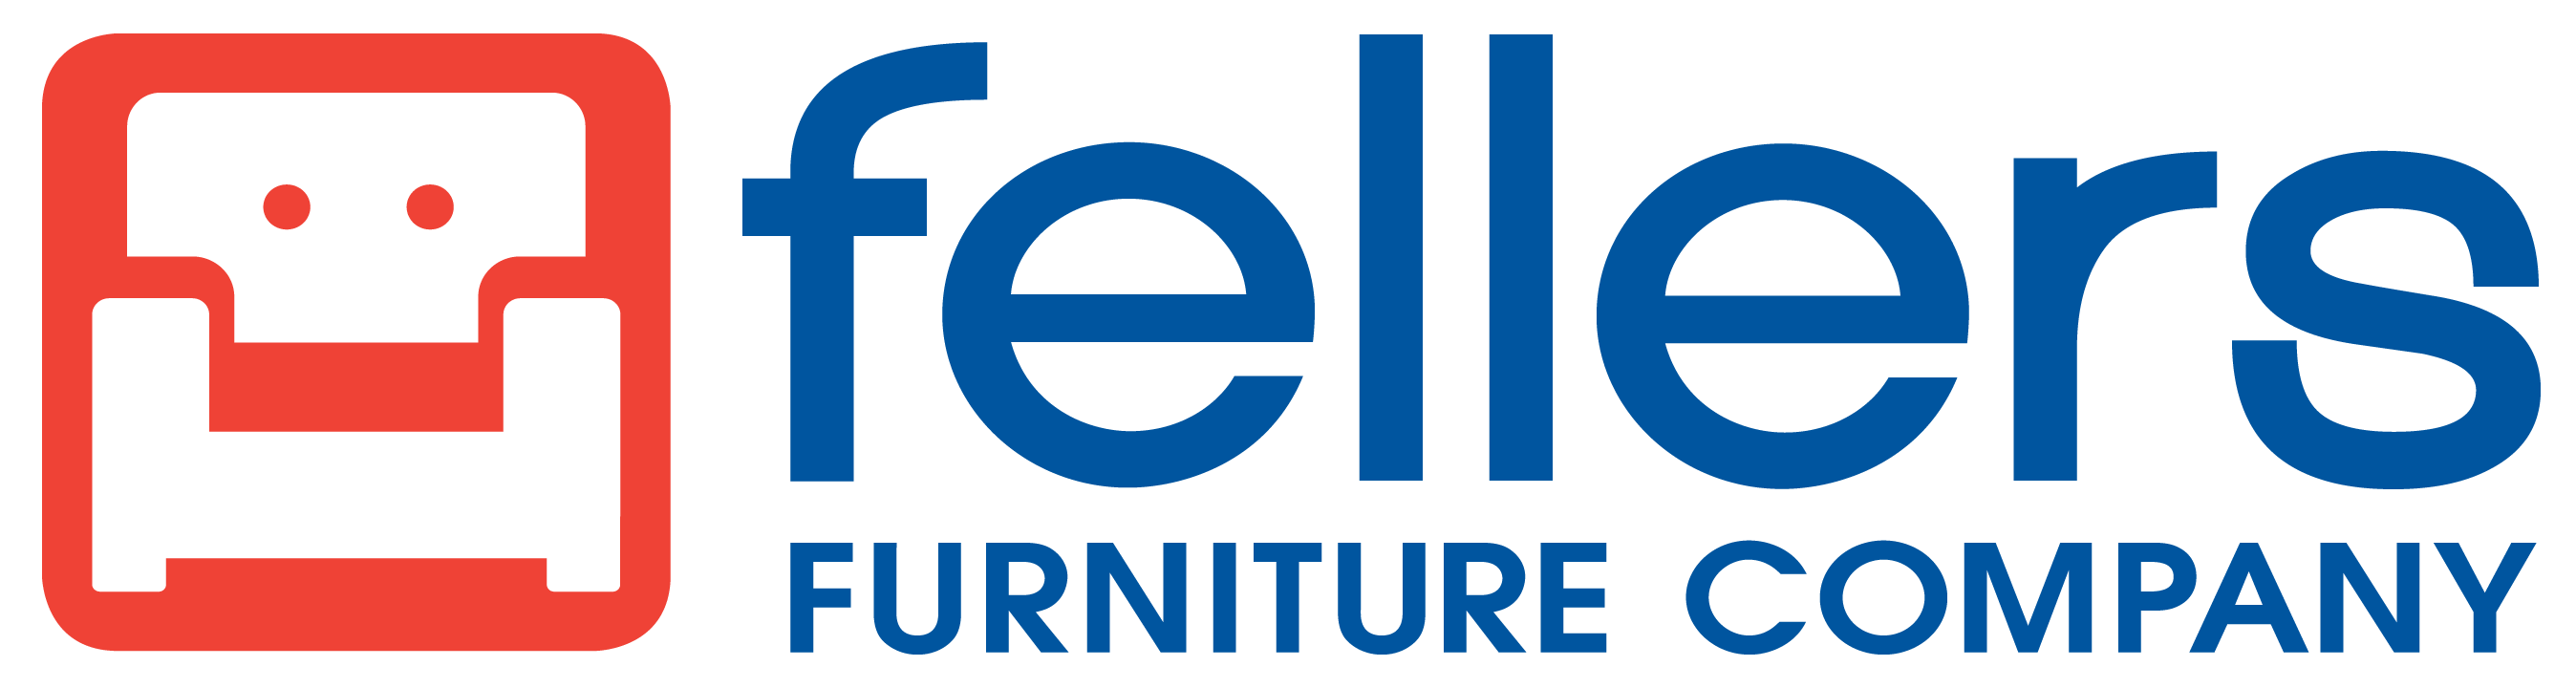 Furniture Company Logo - 1678GRANITE in by Catnapper in Camden, SC - Wedge - Granite